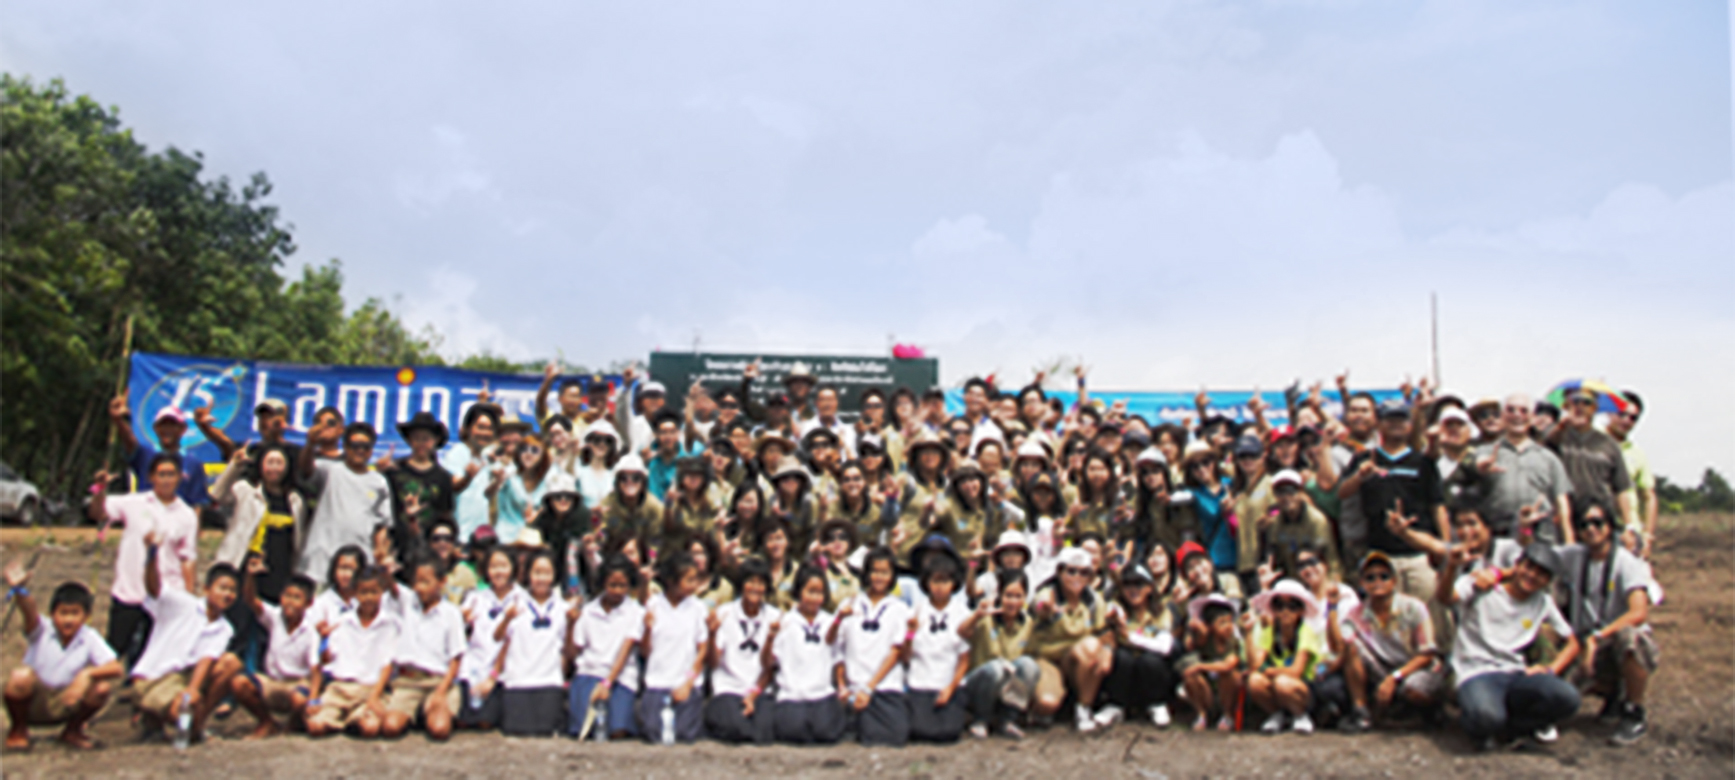  โครงการรักษ์โลกกับลามิน่า ครั้งที่ 4/ ณ จังหวัดราชบุรี